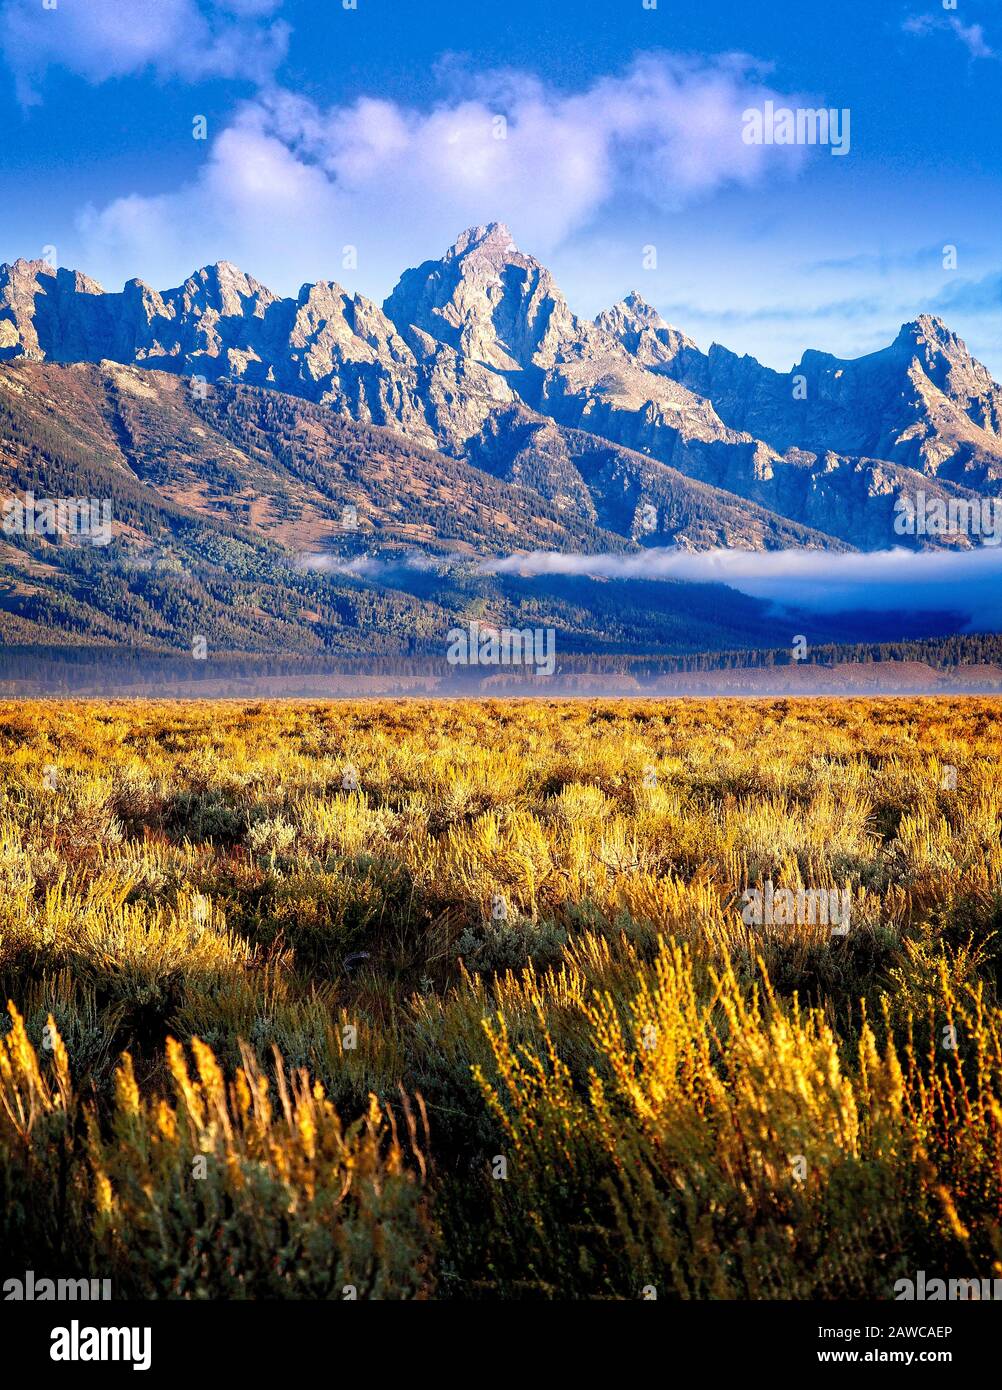 La mattina presto potrai ammirare la catena montuosa del Grand Teton National Park nel Wyoming. Foto Stock